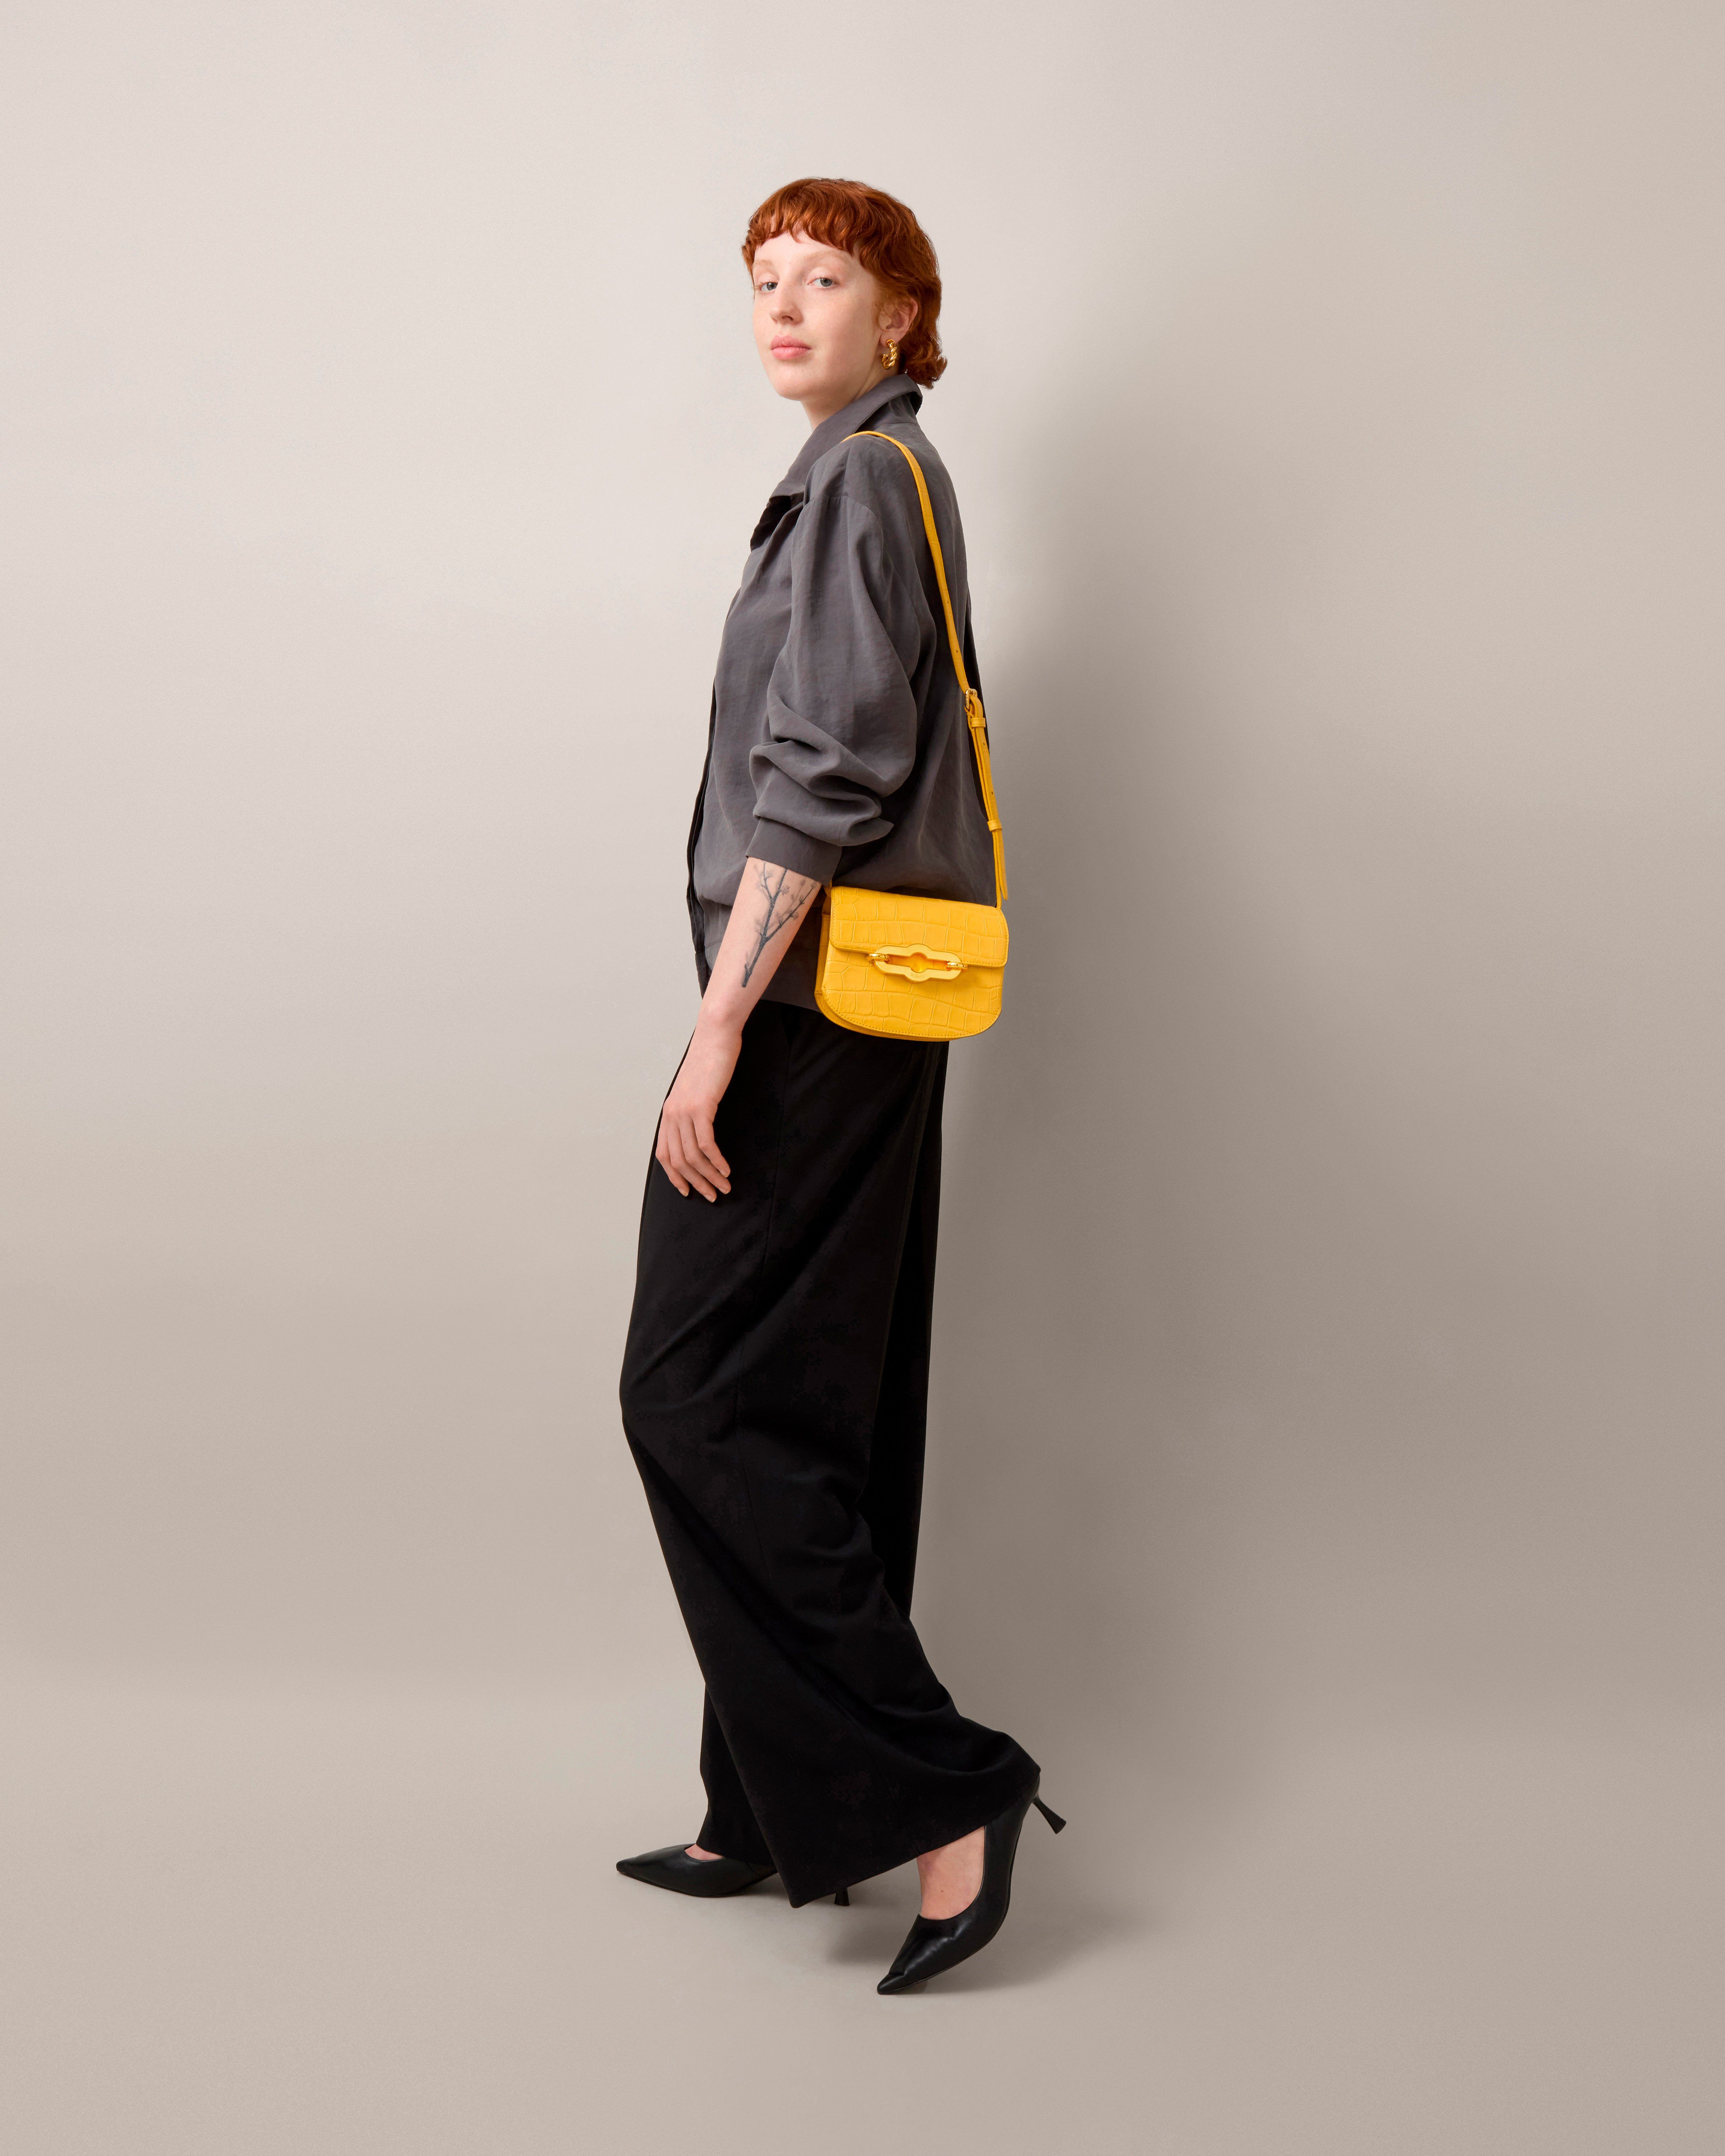 Model mit kleiner Pimlico Satchel Tasche aus mattem Leder mit Kroko-Prägung in Gelb